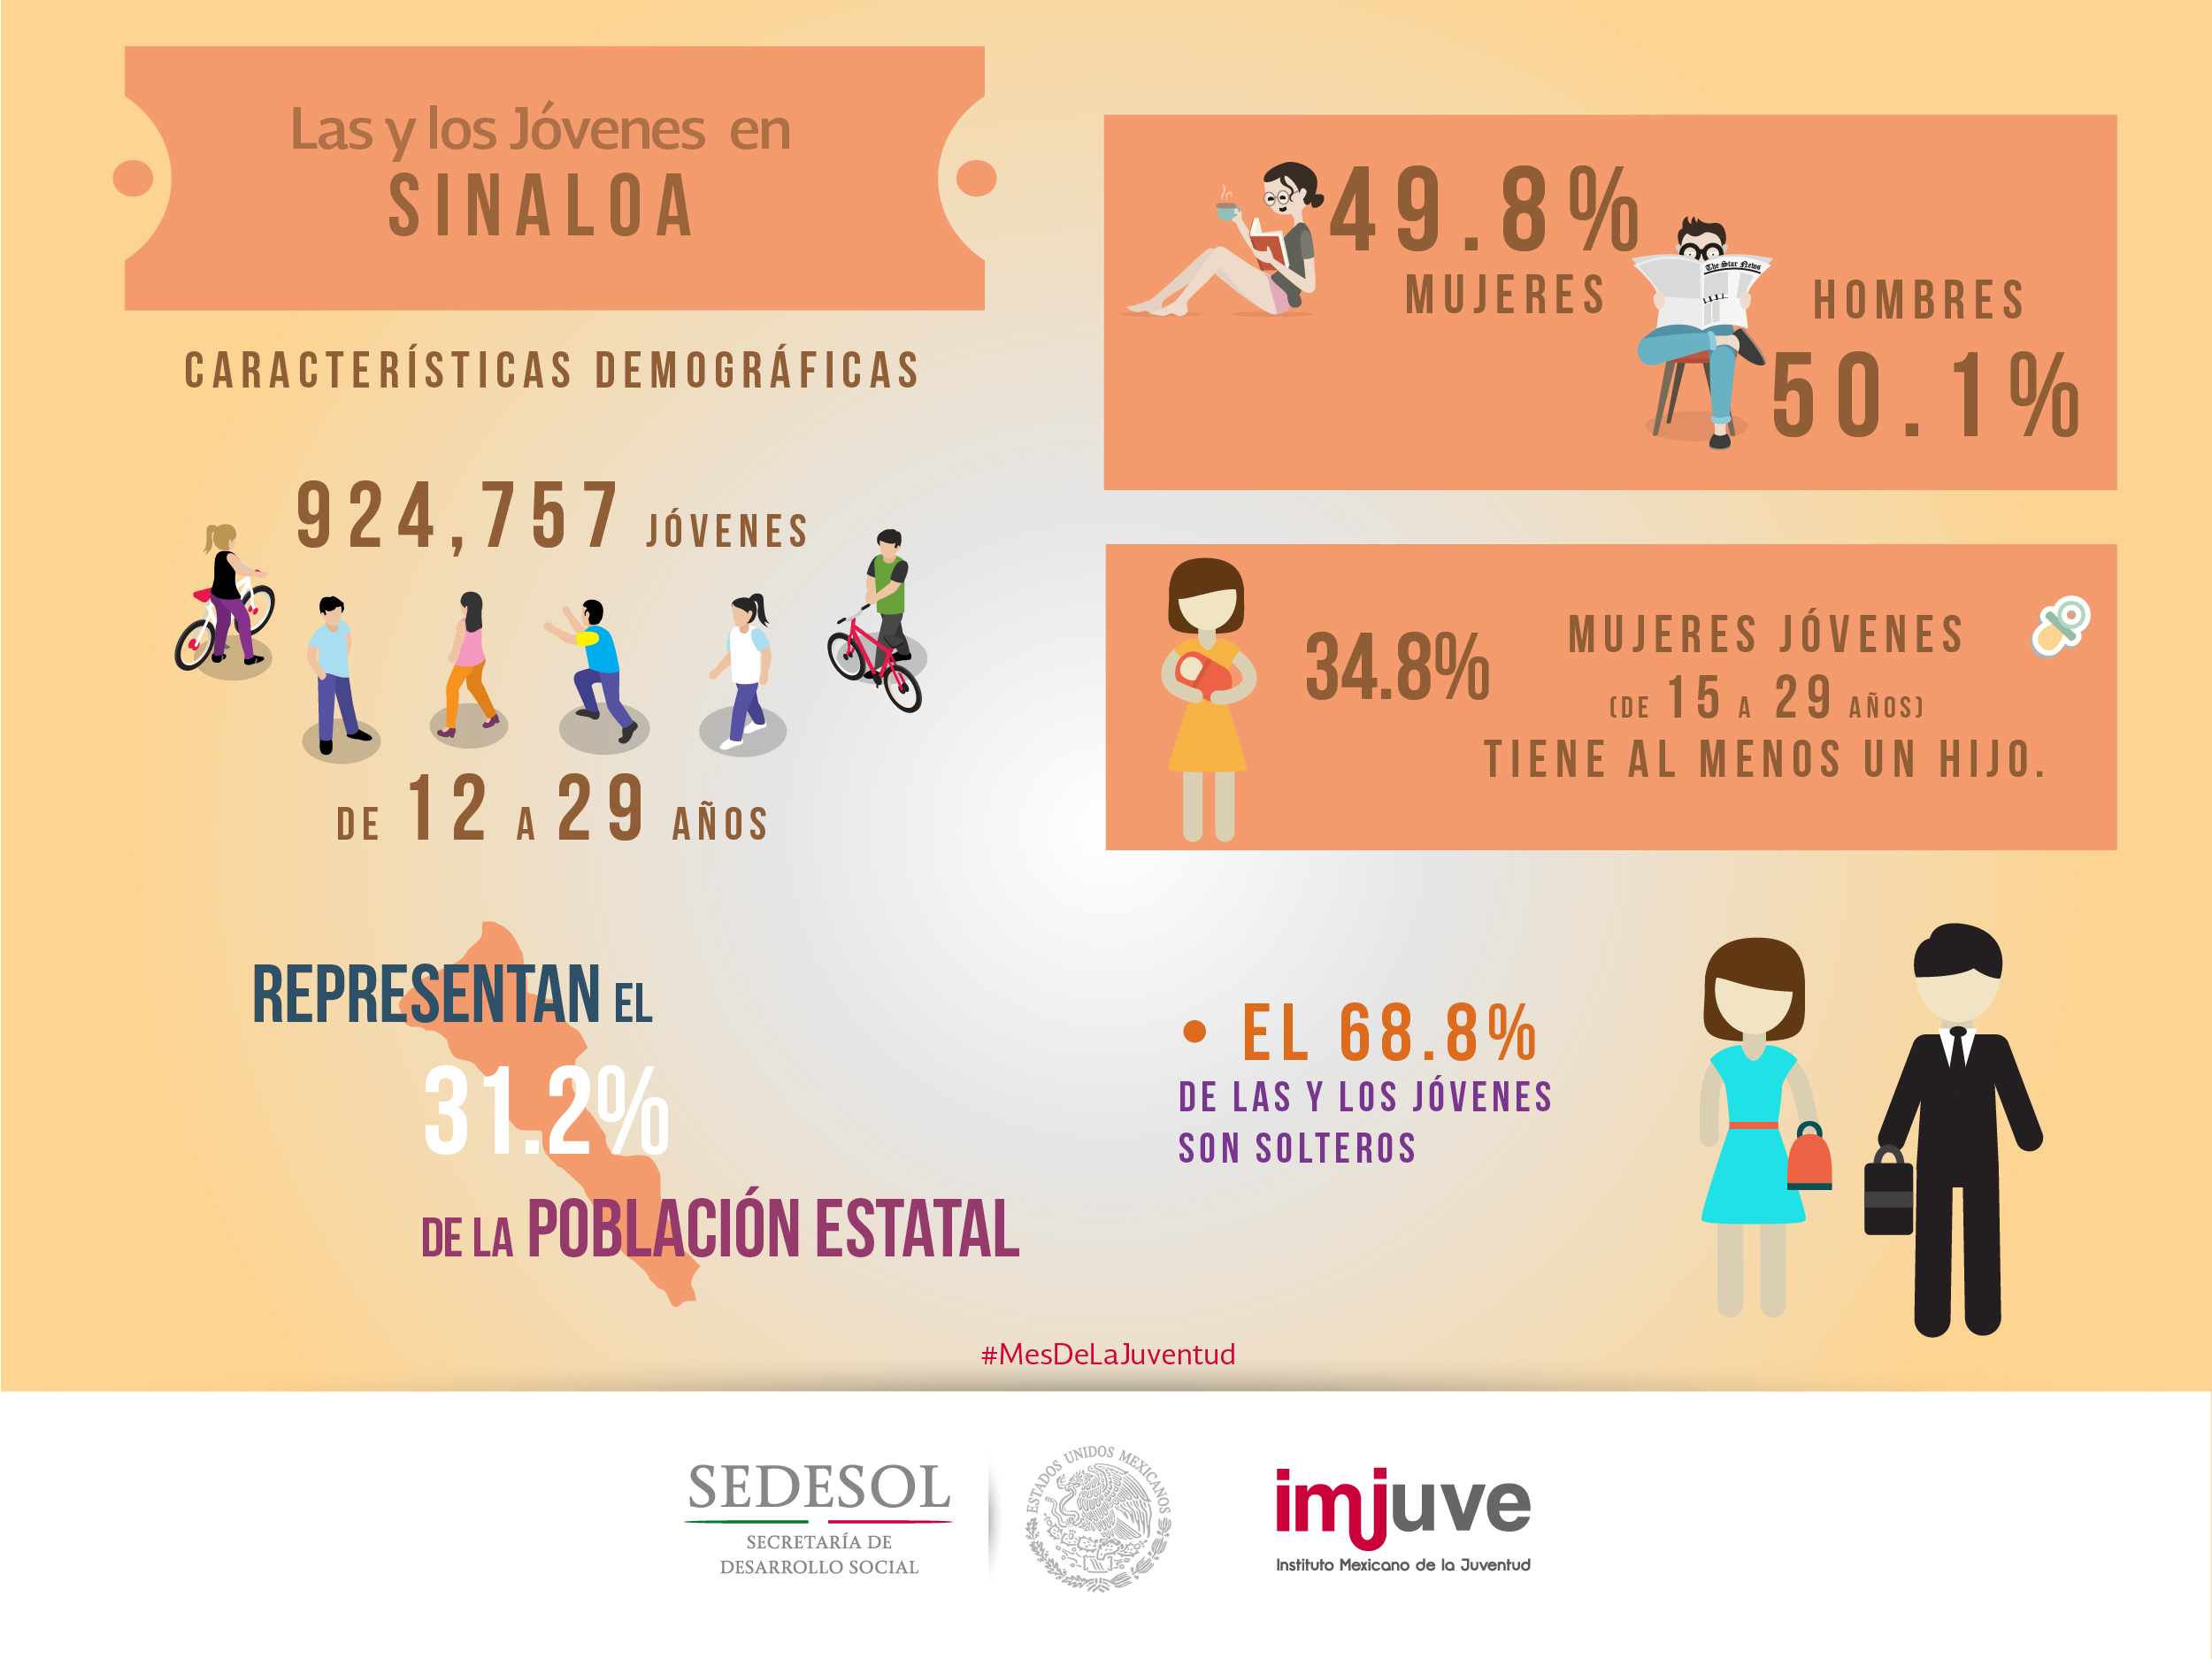 #DatoCurioso en Sinaloa el 80.2% de los jóvenes está afiliado a algún servicio de salud público